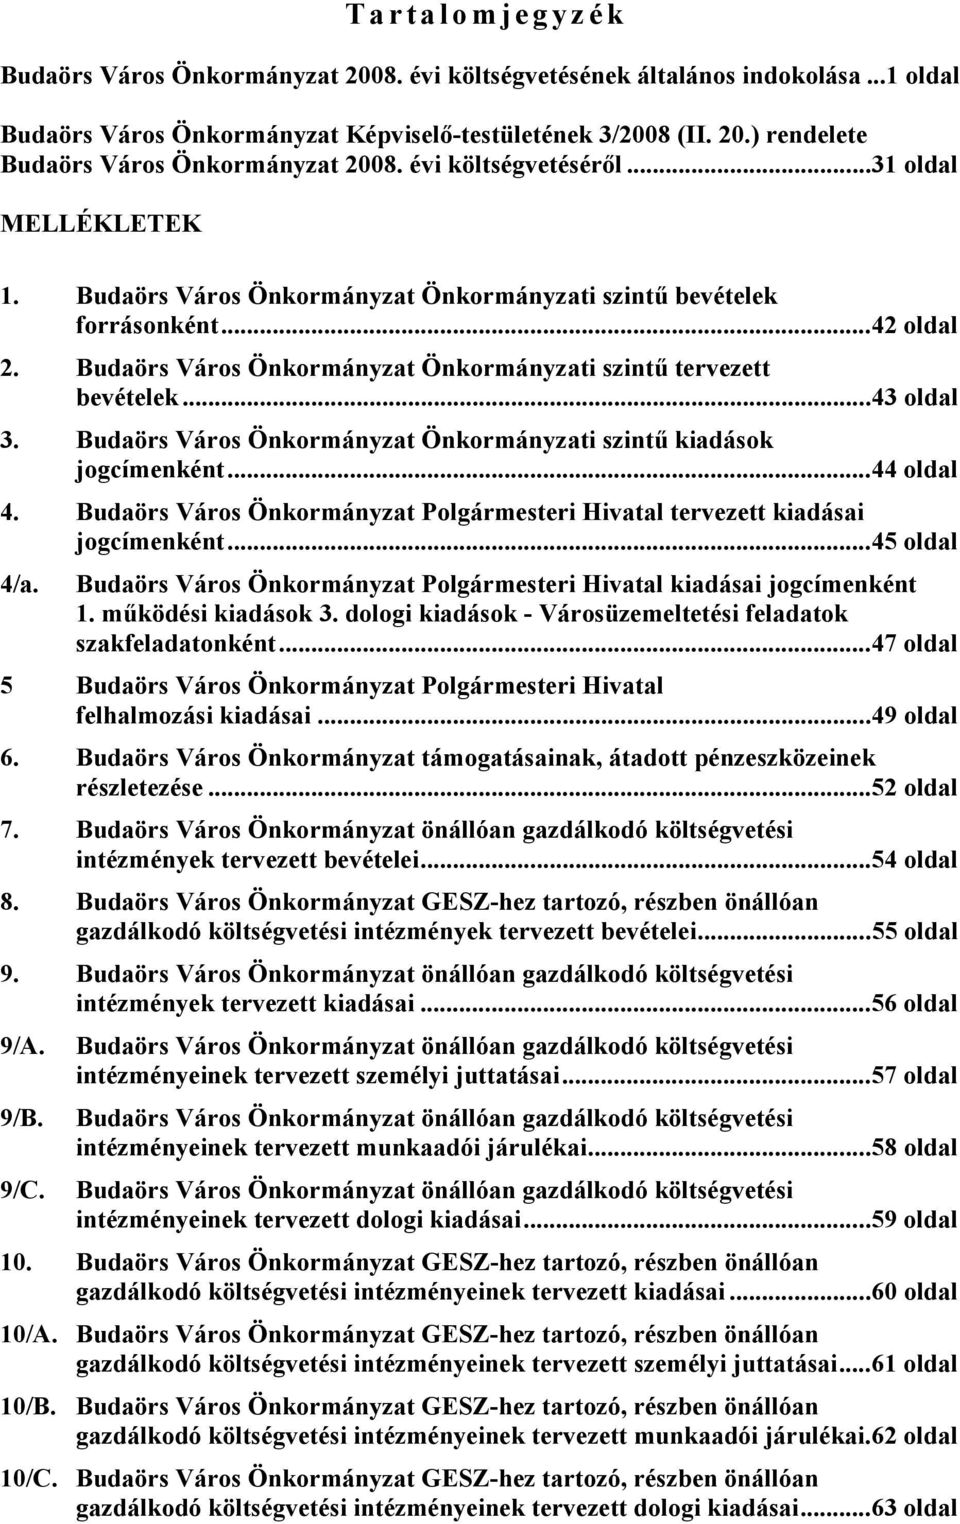 ..43 oldal 3. Budaörs Város Önkormányzat Önkormányzati szintű kiadások jogcímenként...44 oldal 4. Budaörs Város Önkormányzat Polgármesteri Hivatal tervezett kiadásai jogcímenként...45 oldal 4/a.